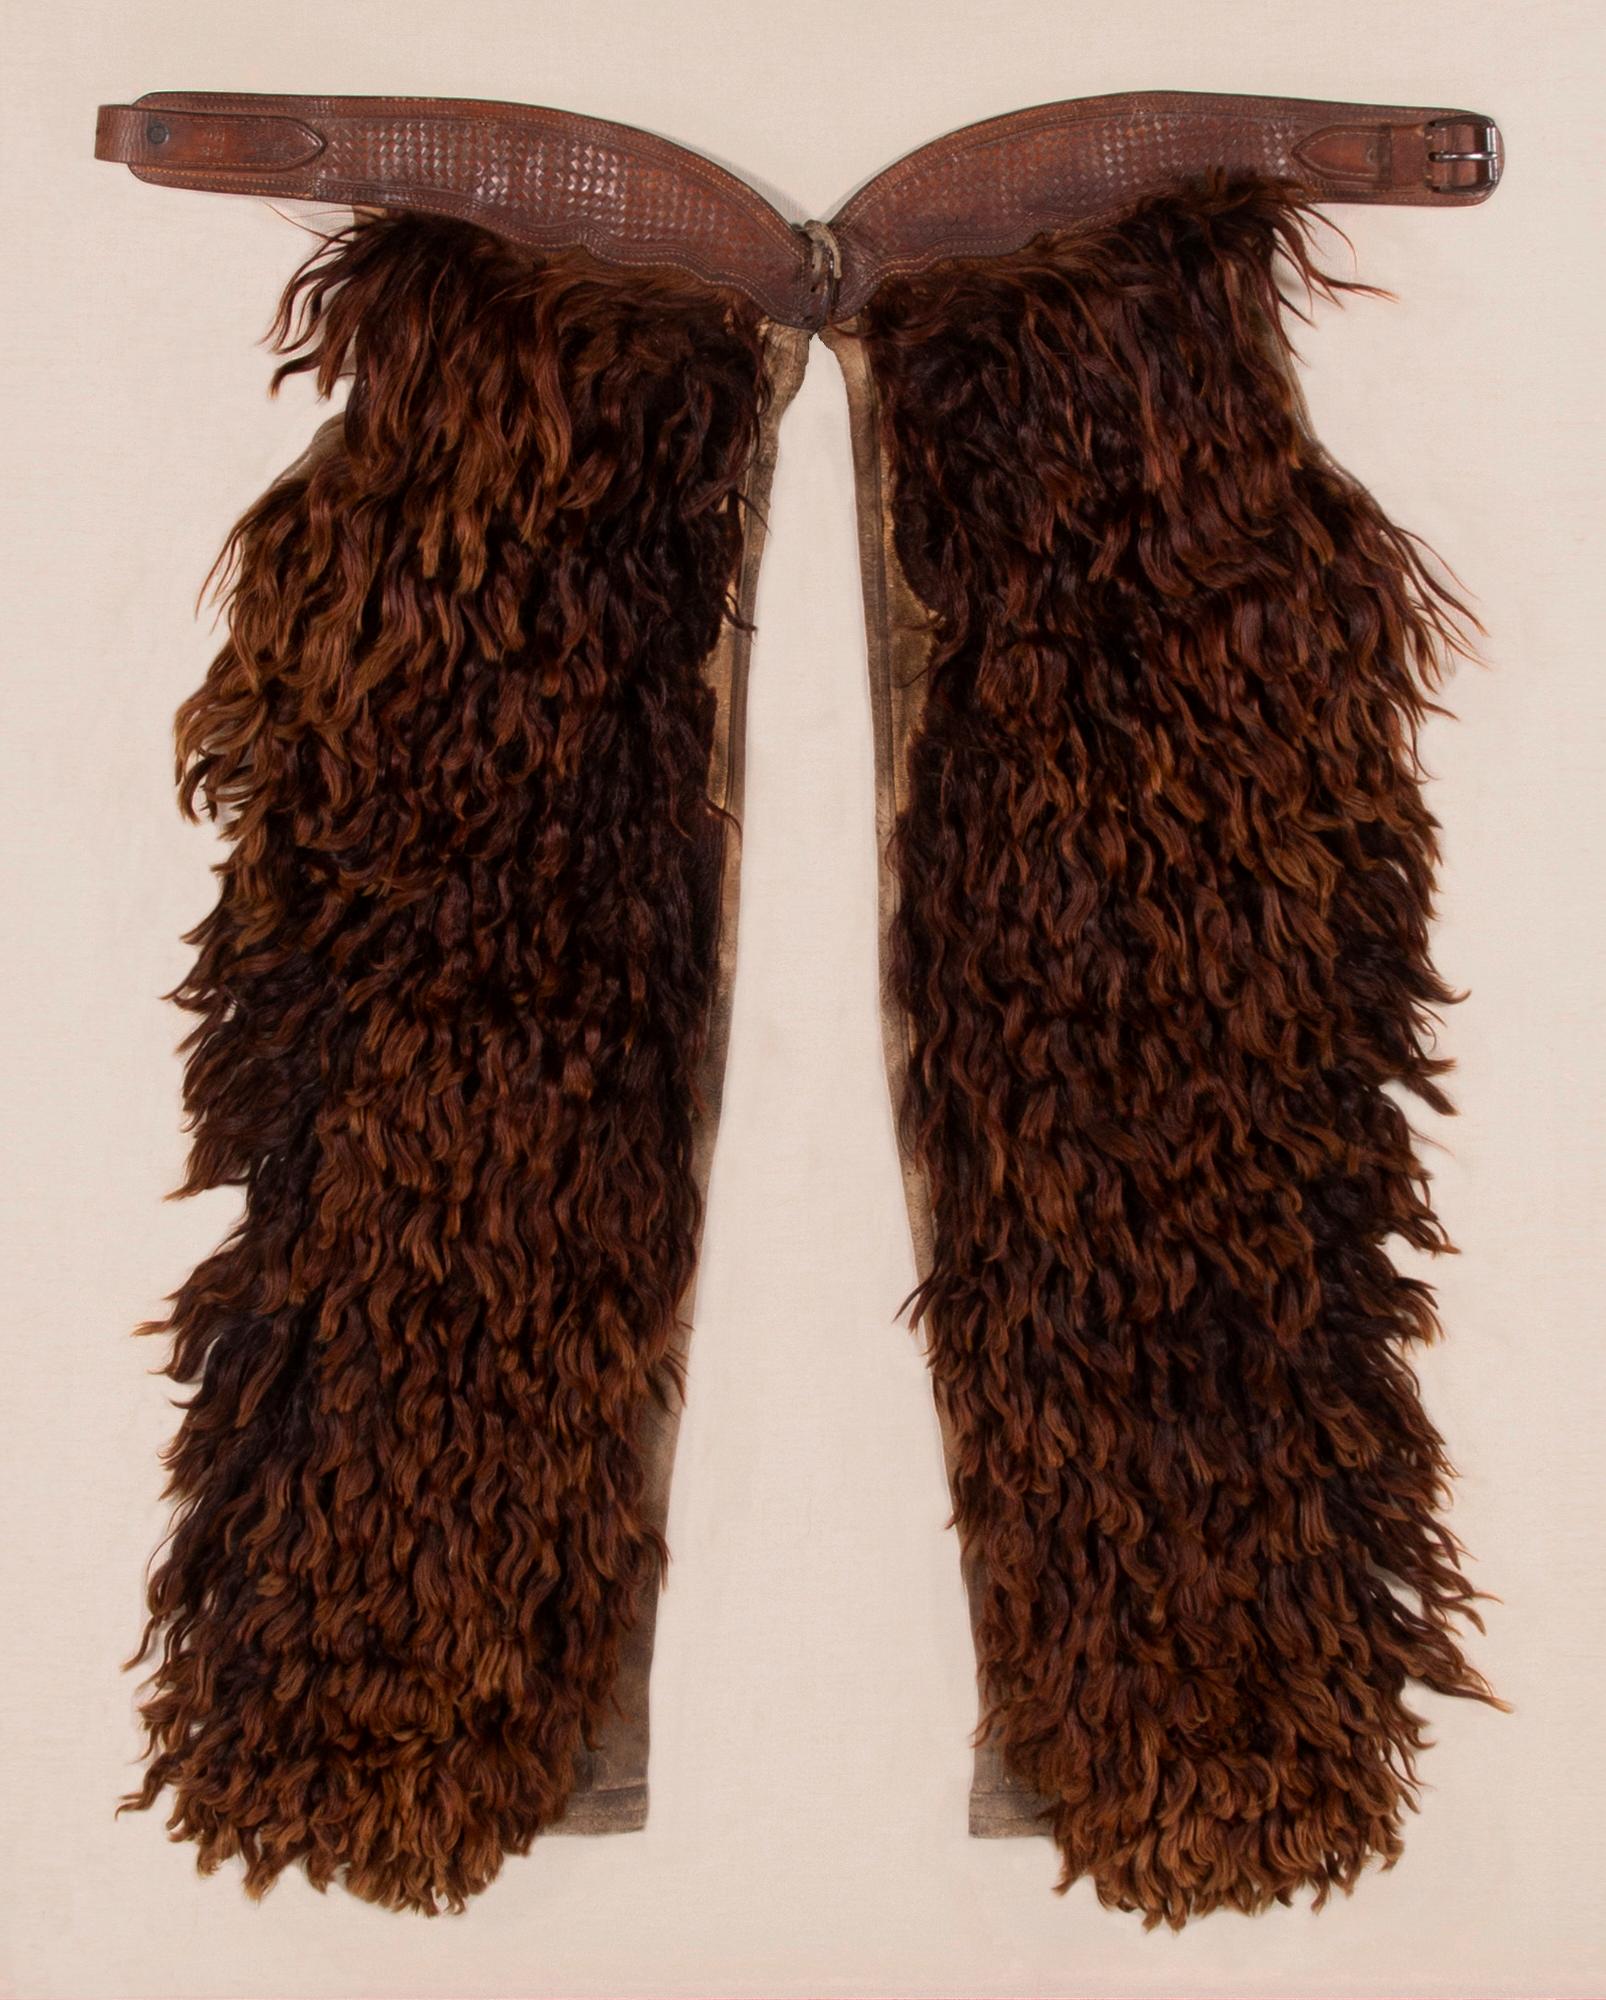 Wollige Angora-Chaps mit schönem Leder, hergestellt von der John Clark Saddlery Company in Portland, Oregon, signiert, ca. 1873-1929.

Woll-Chaps aus Leder und Segeltuch, mit gefärbtem Angora bezogen, hergestellt von der John F. Clark Saddlery